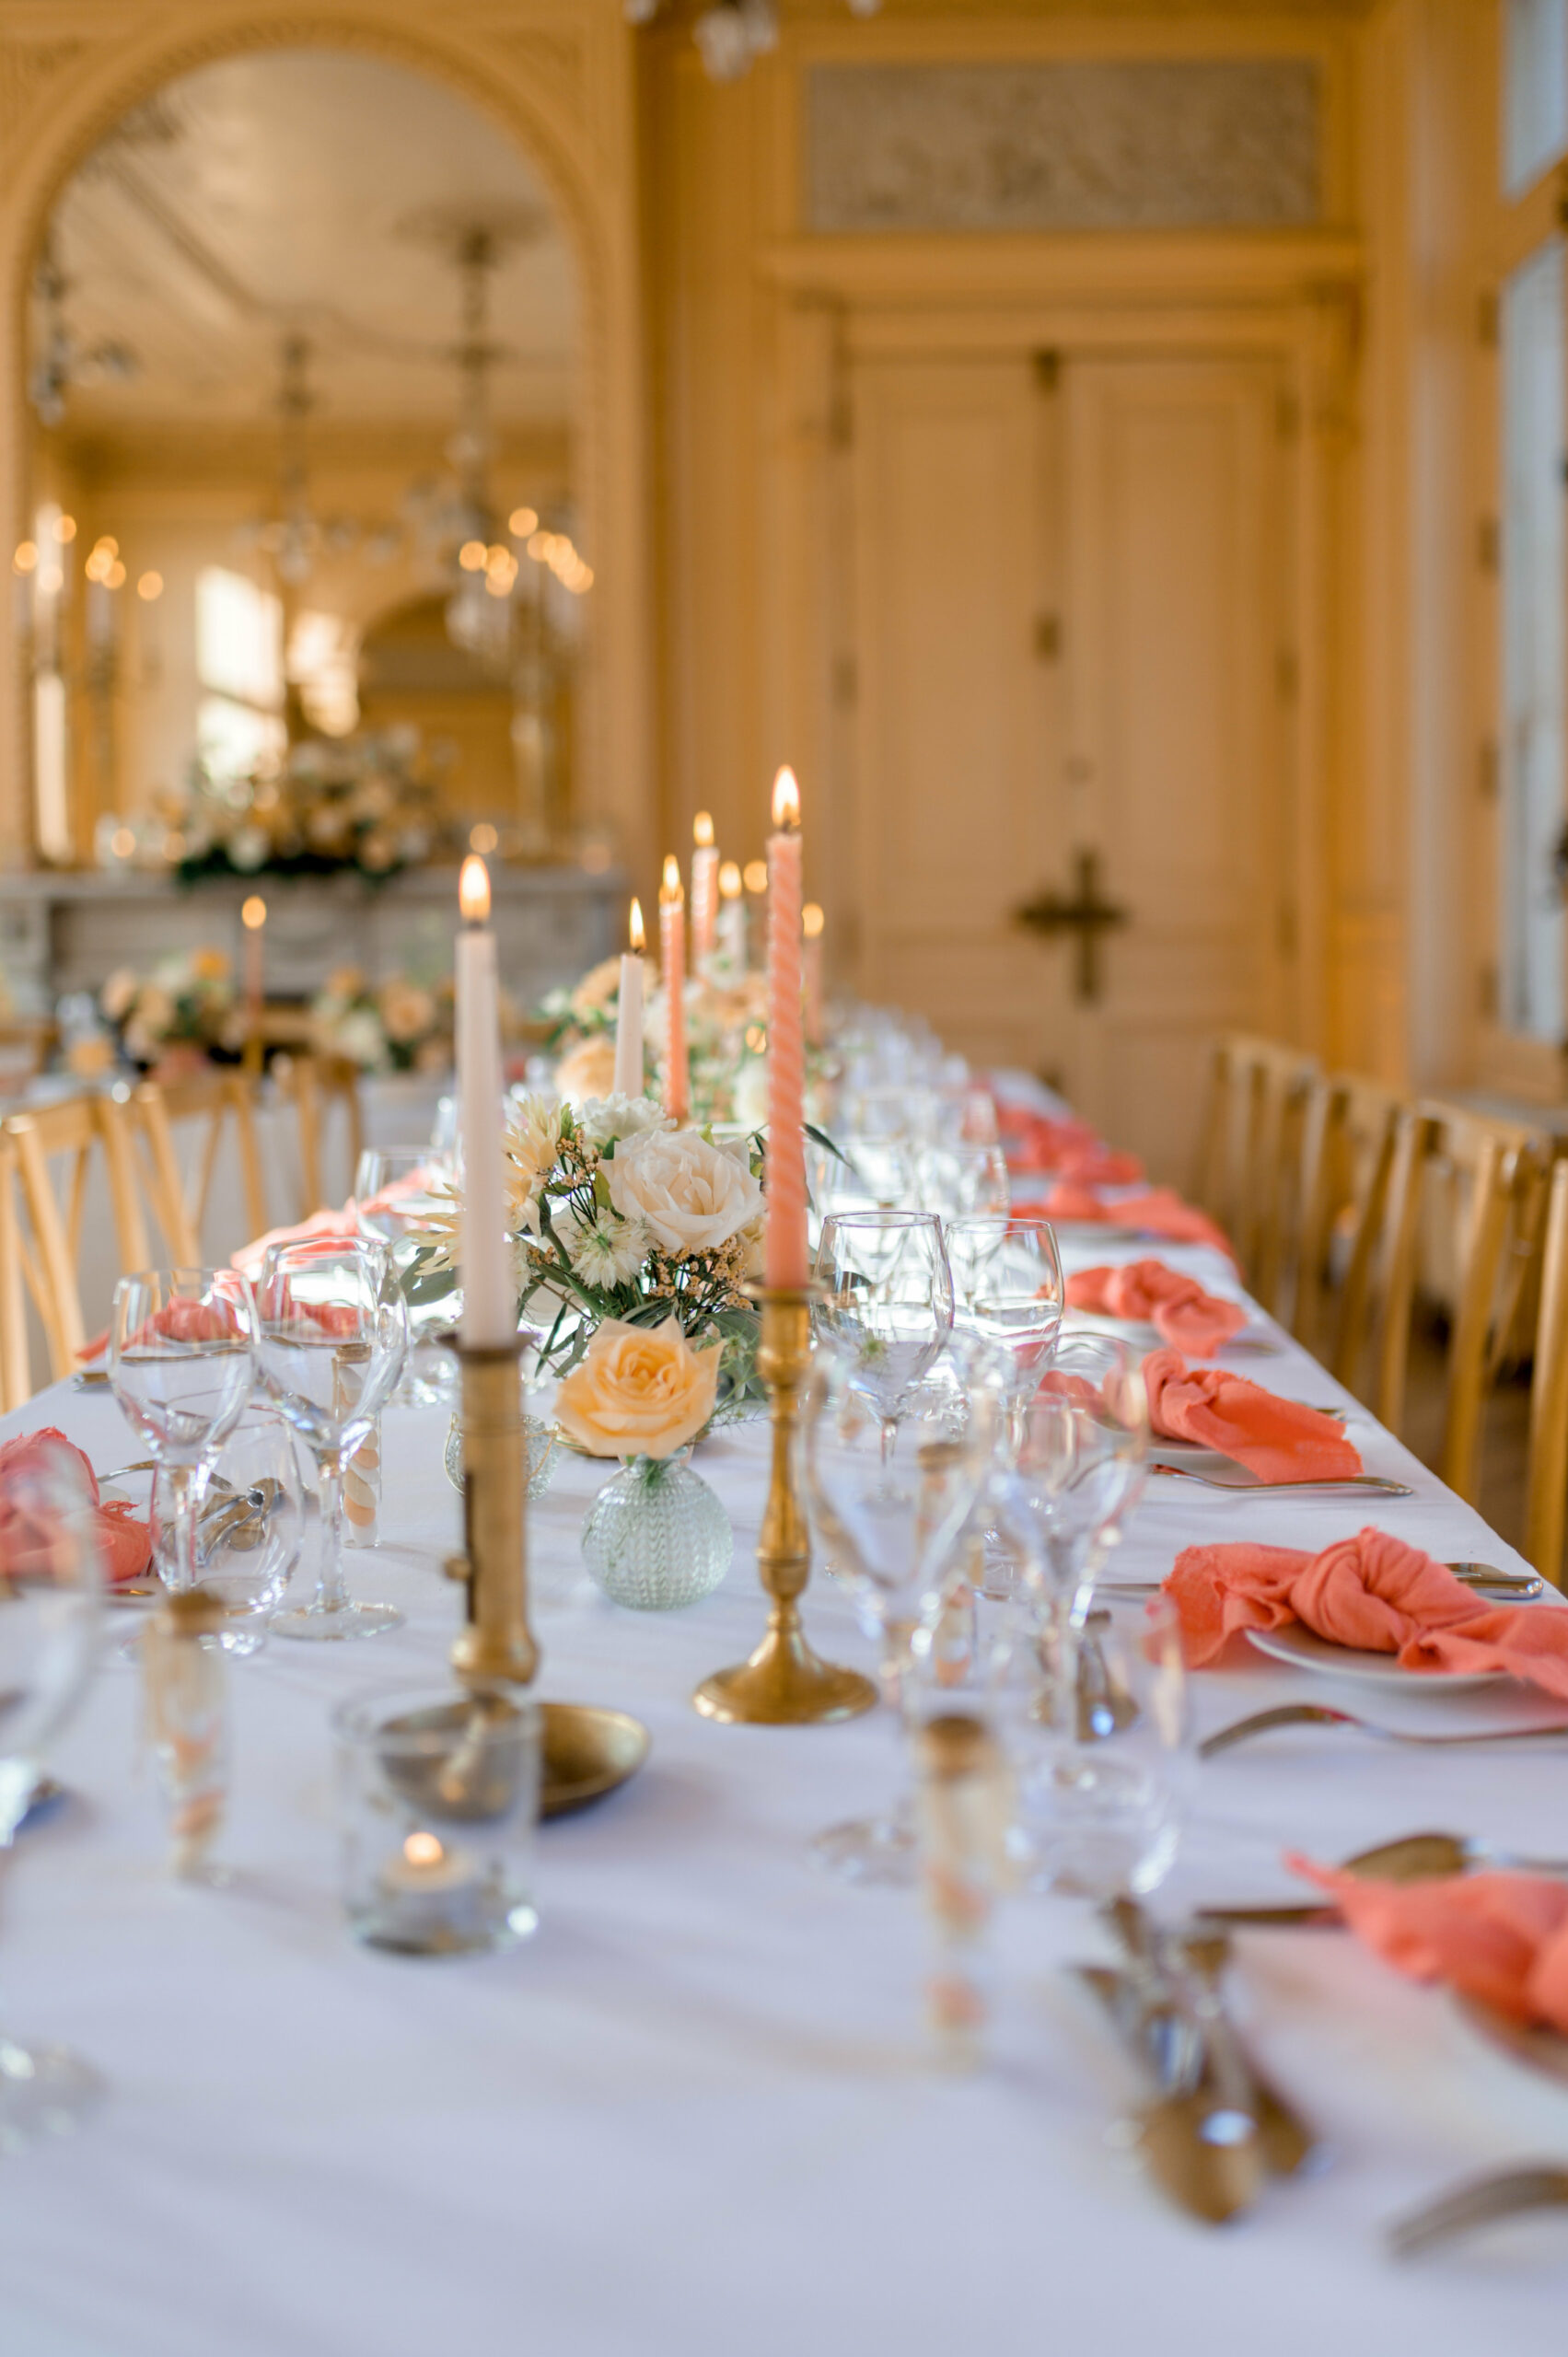 décoration table de mariage, serviettes colorées, tons pêche, mariage dans un château, couleurs de table